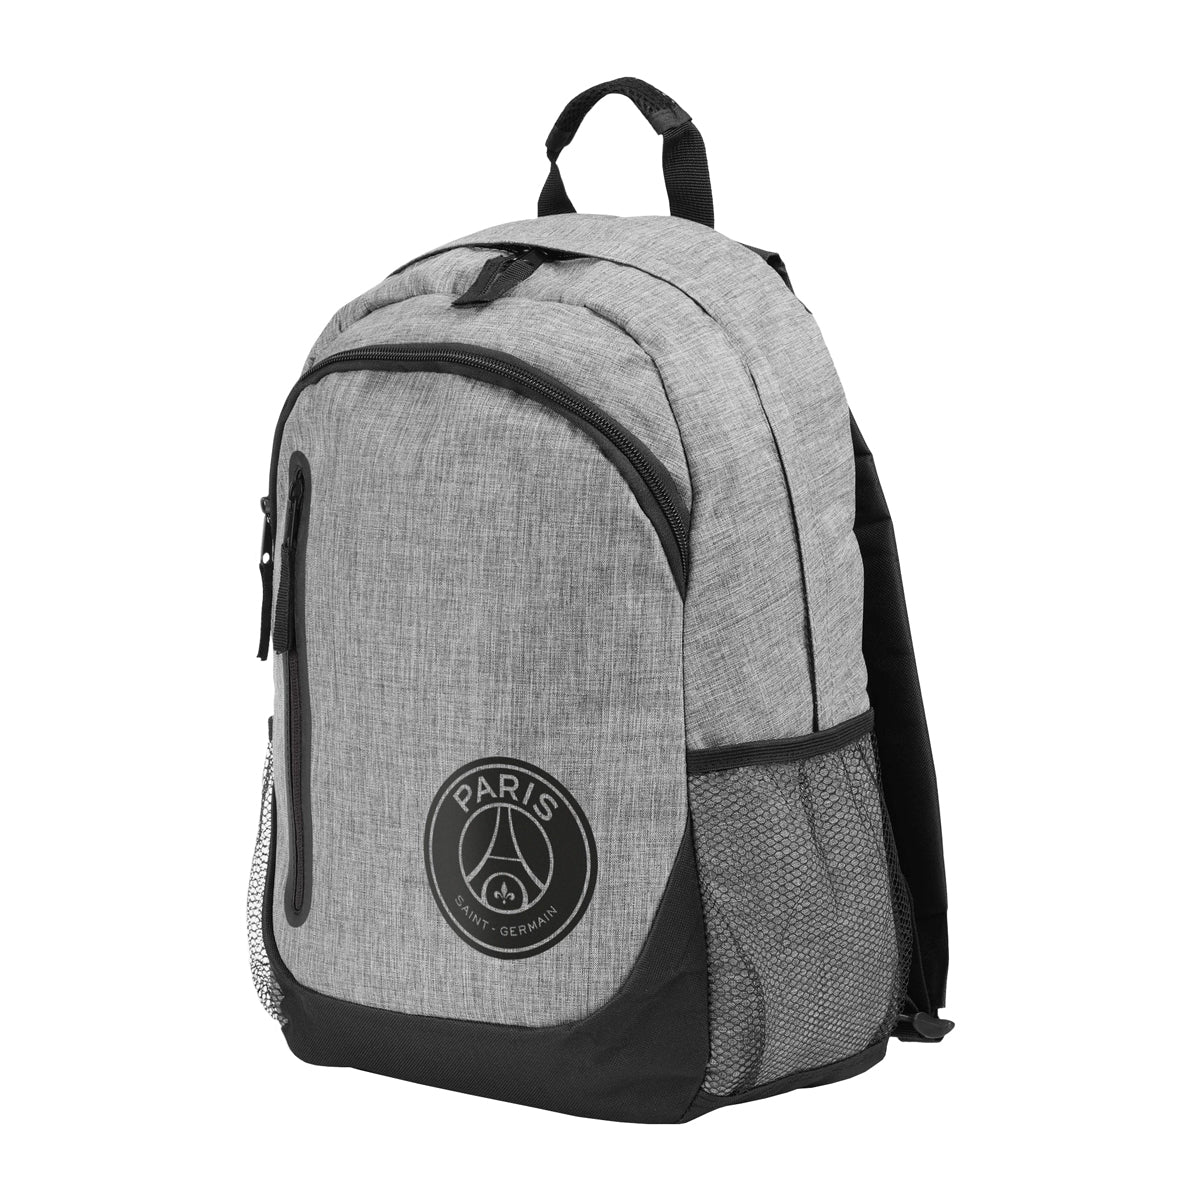 psg-backpack-web2.jpg